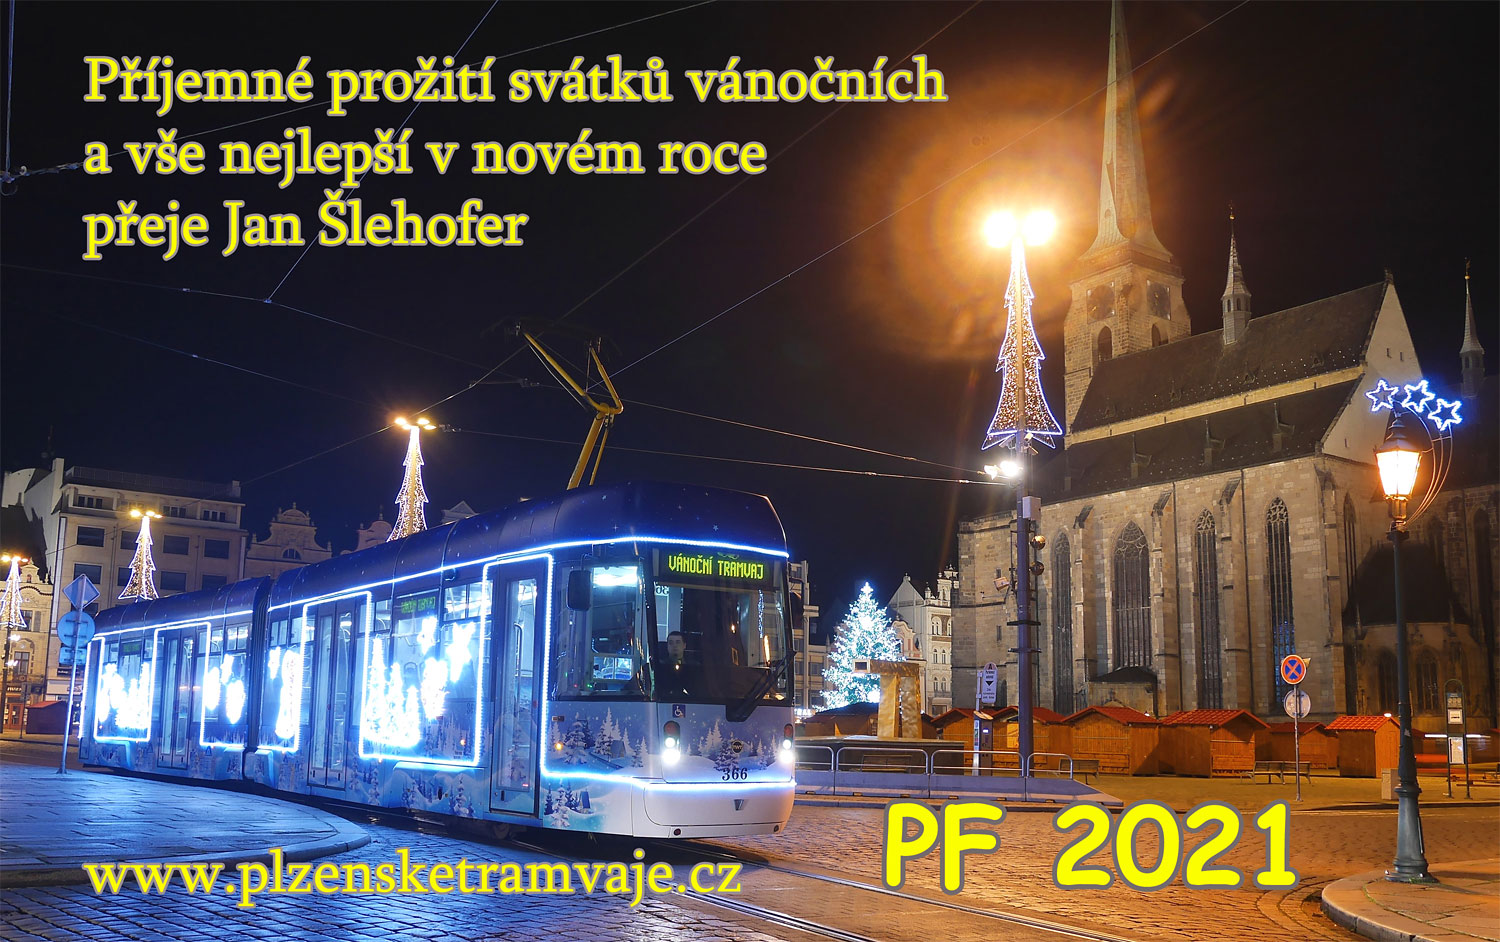 Pohodové Vánoce a vše nejlepší v novém roce 2021 přeje Honza Šlehofer a www.plzensketramvaje.cz